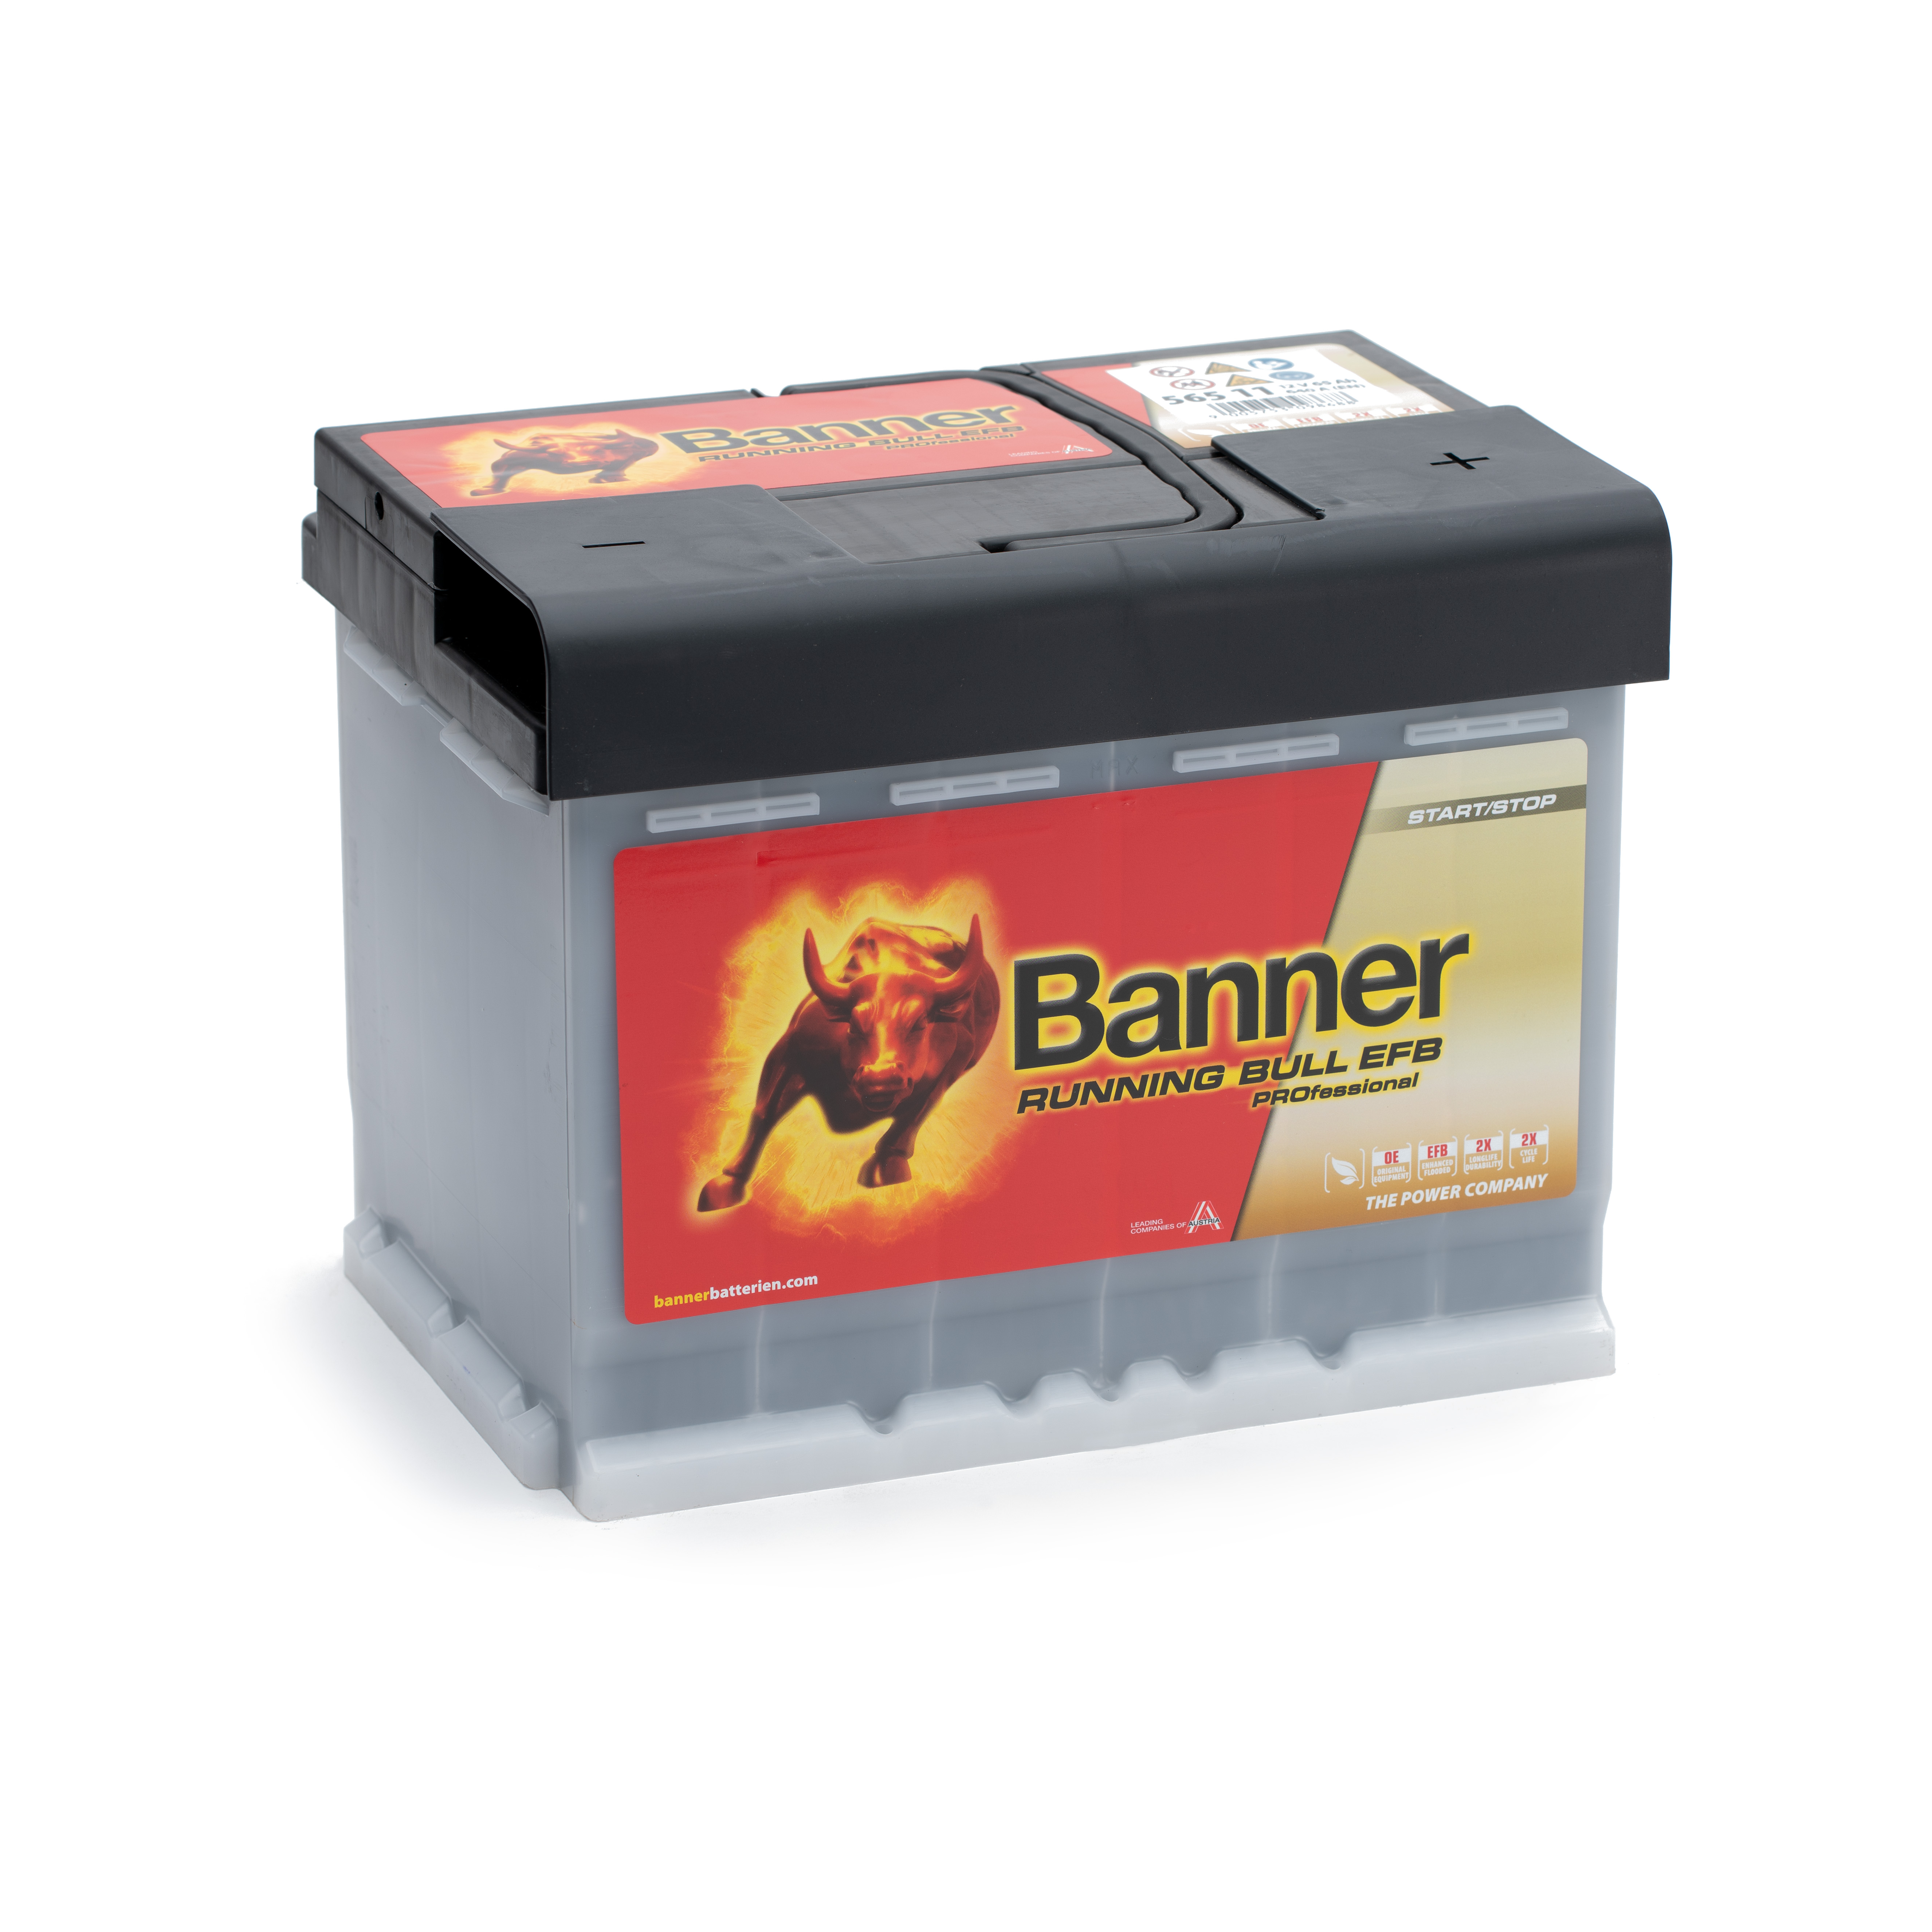 Banner 565 11 Running Bull EFB PRO Autobatterie 65Ah 560 500 064